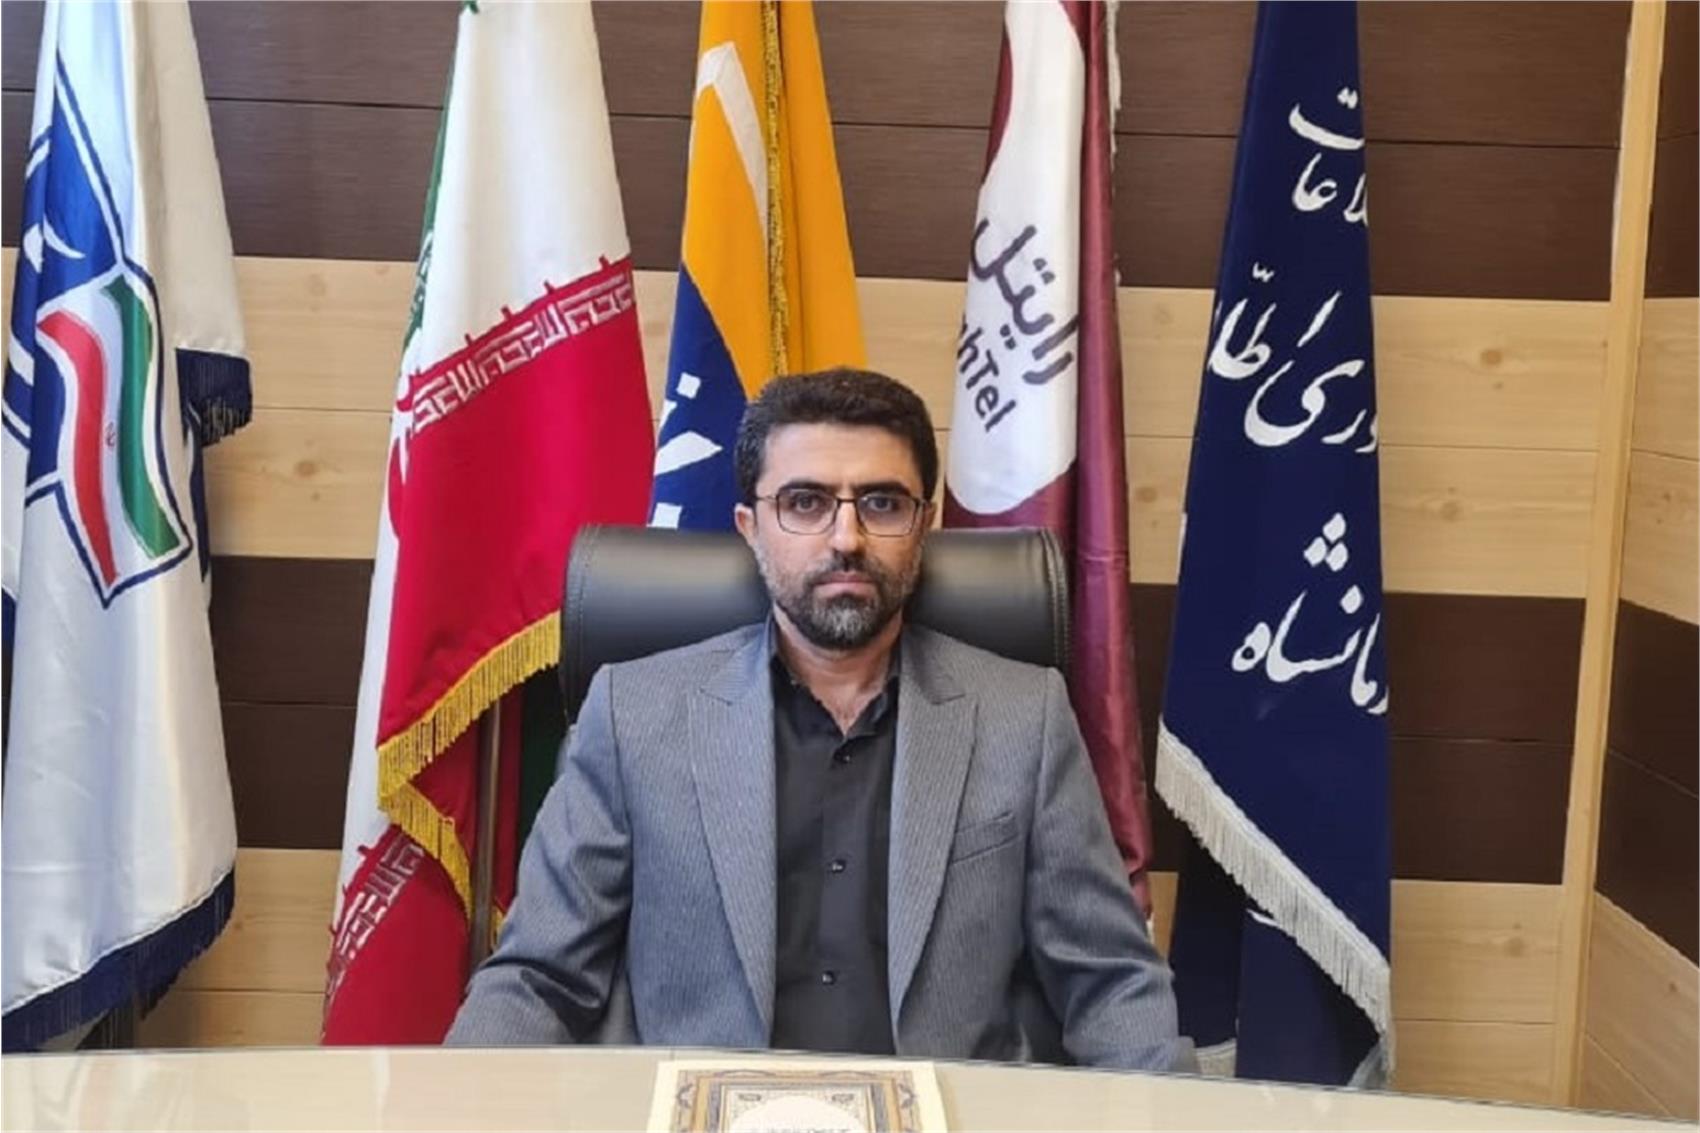 انتصاب مدیرکل ارتباطات و فناوری اطلاعات استان کرمانشاه